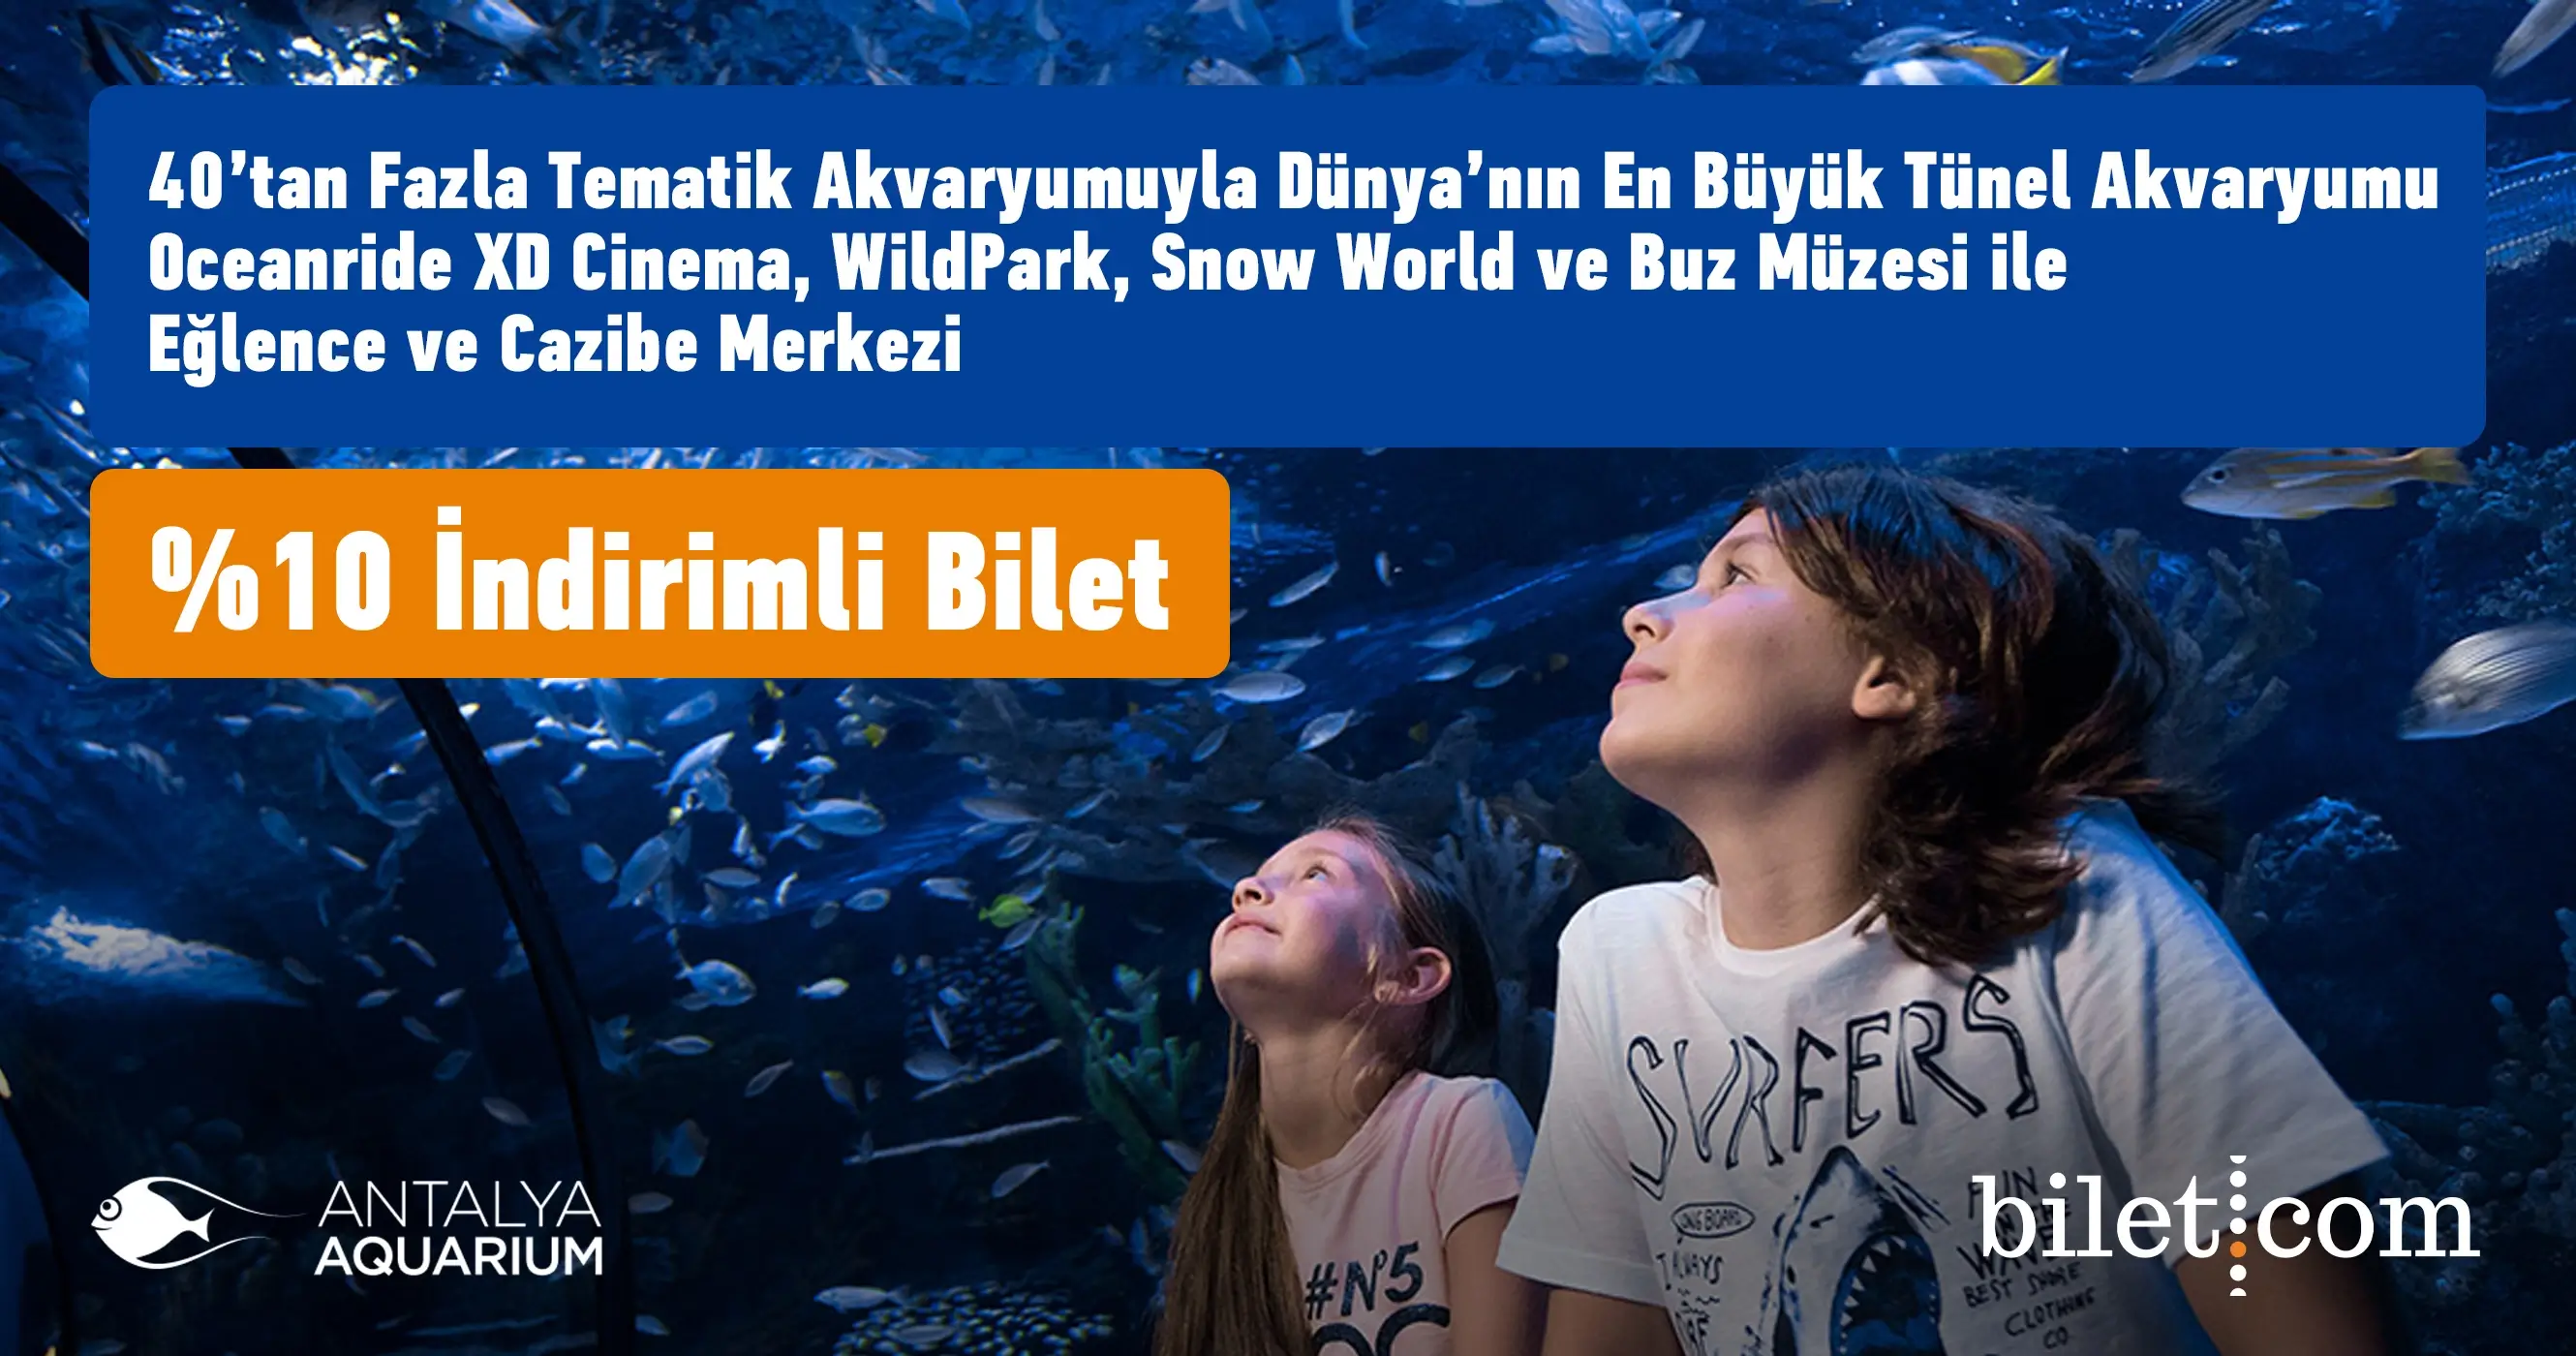 Biglietto Acquario di Antalya - 1